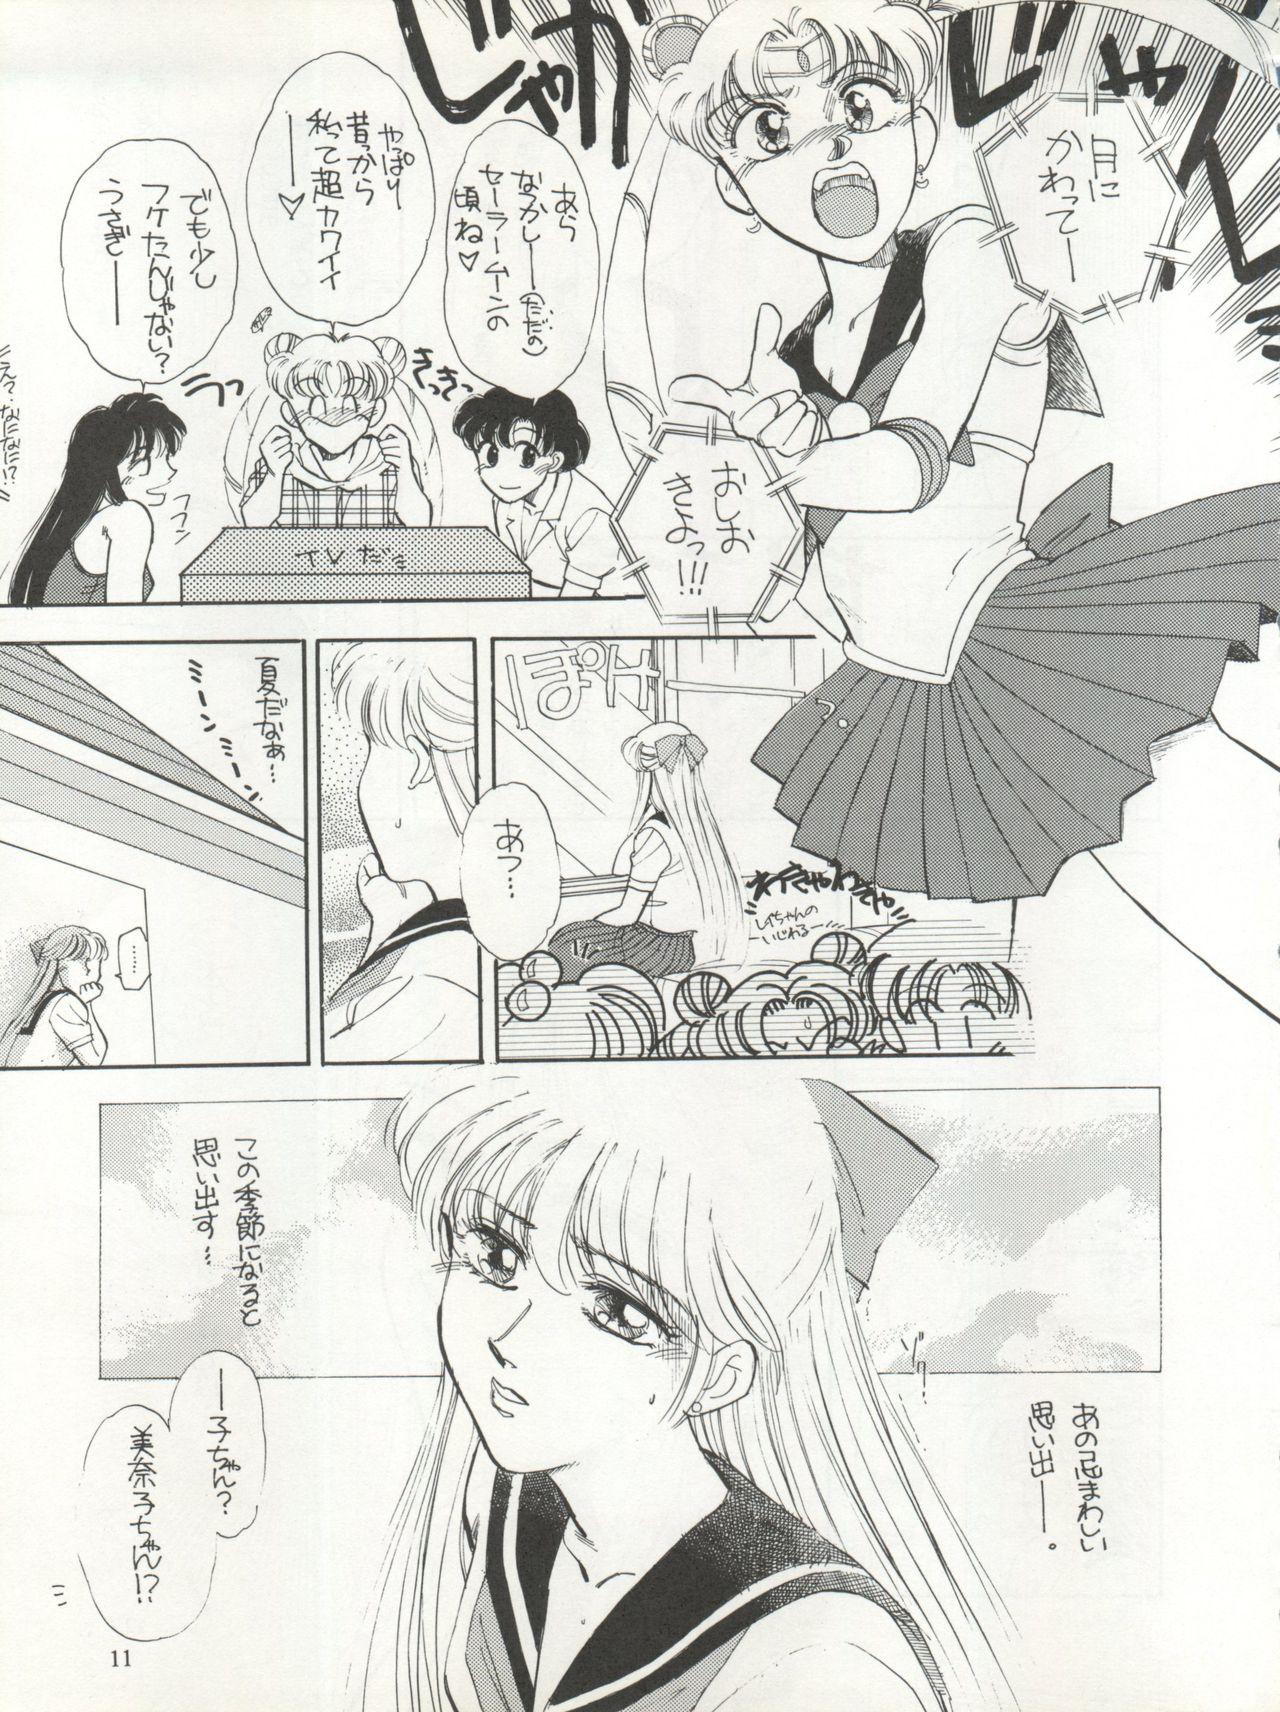 Teens Sekai Seifuku Sailor Fuku 5 - Sailor moon Small Boobs - Page 9